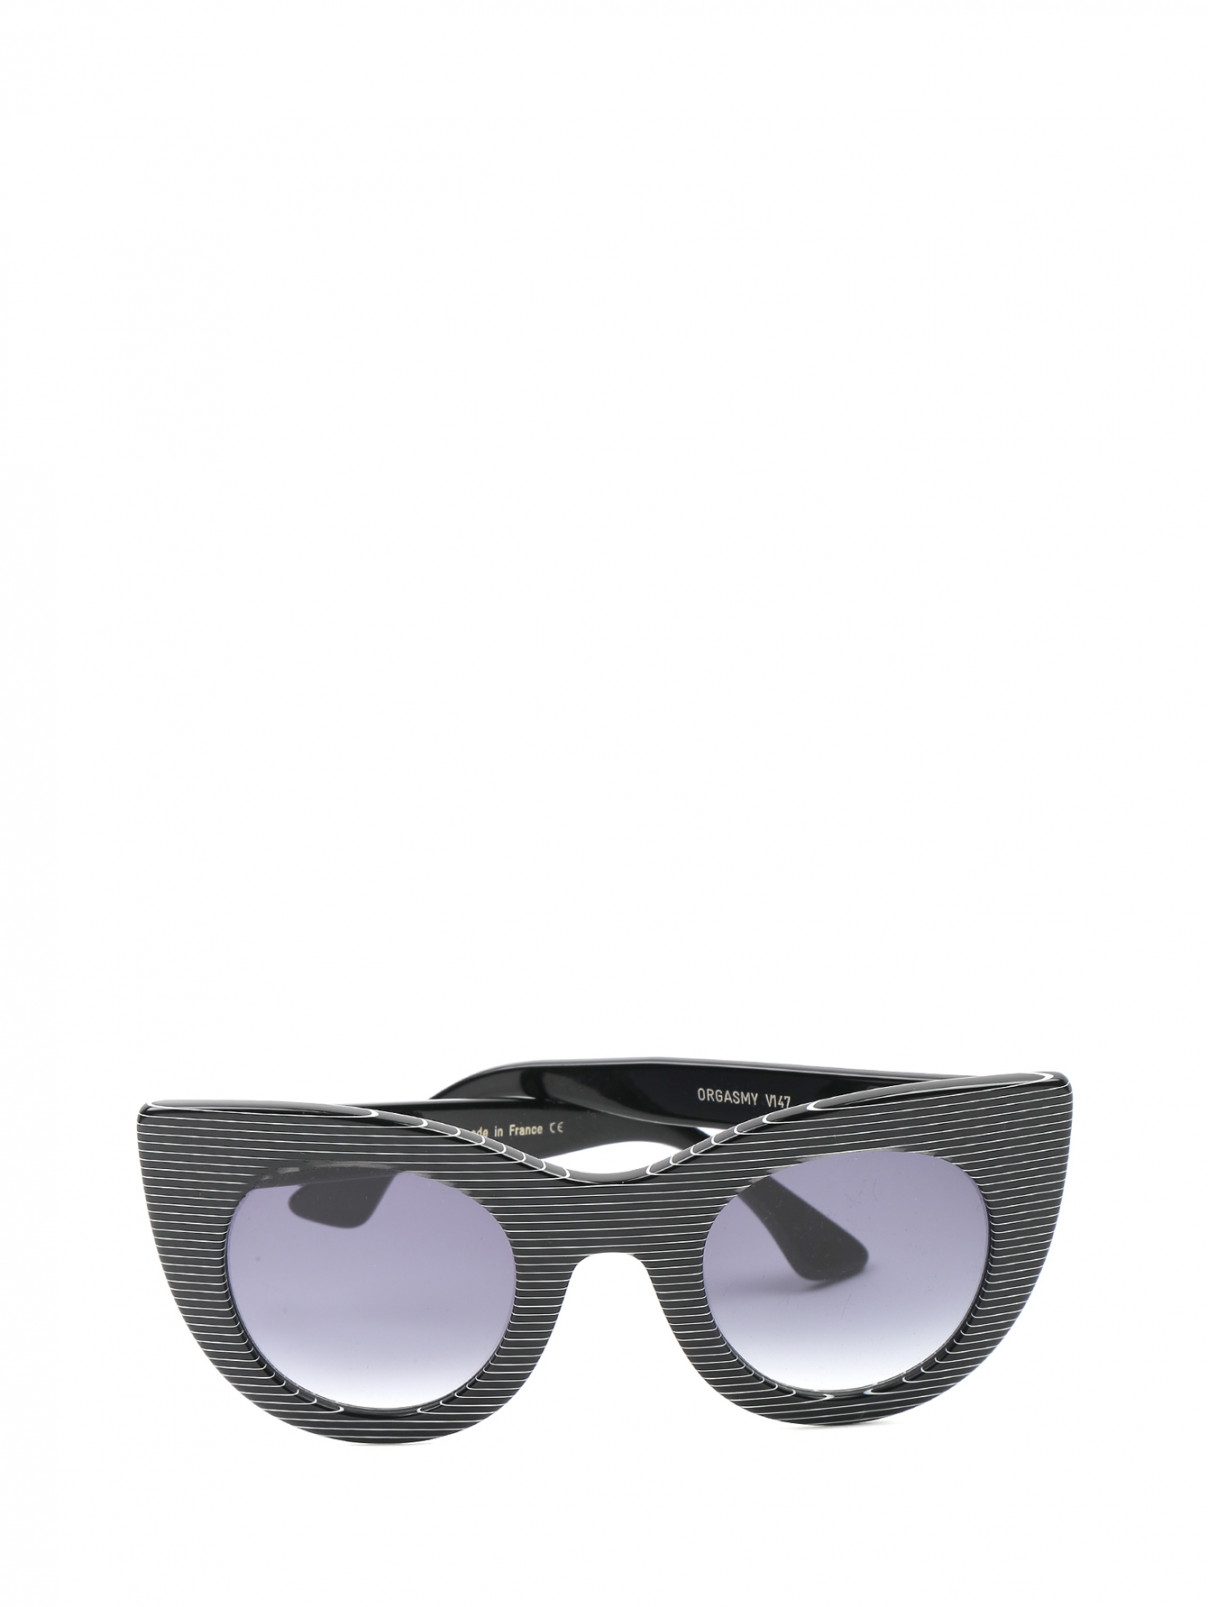 Cолнцезащитные очки в оправе из пластика с узором полоска Thierry Lasry  –  Общий вид  – Цвет:  Узор